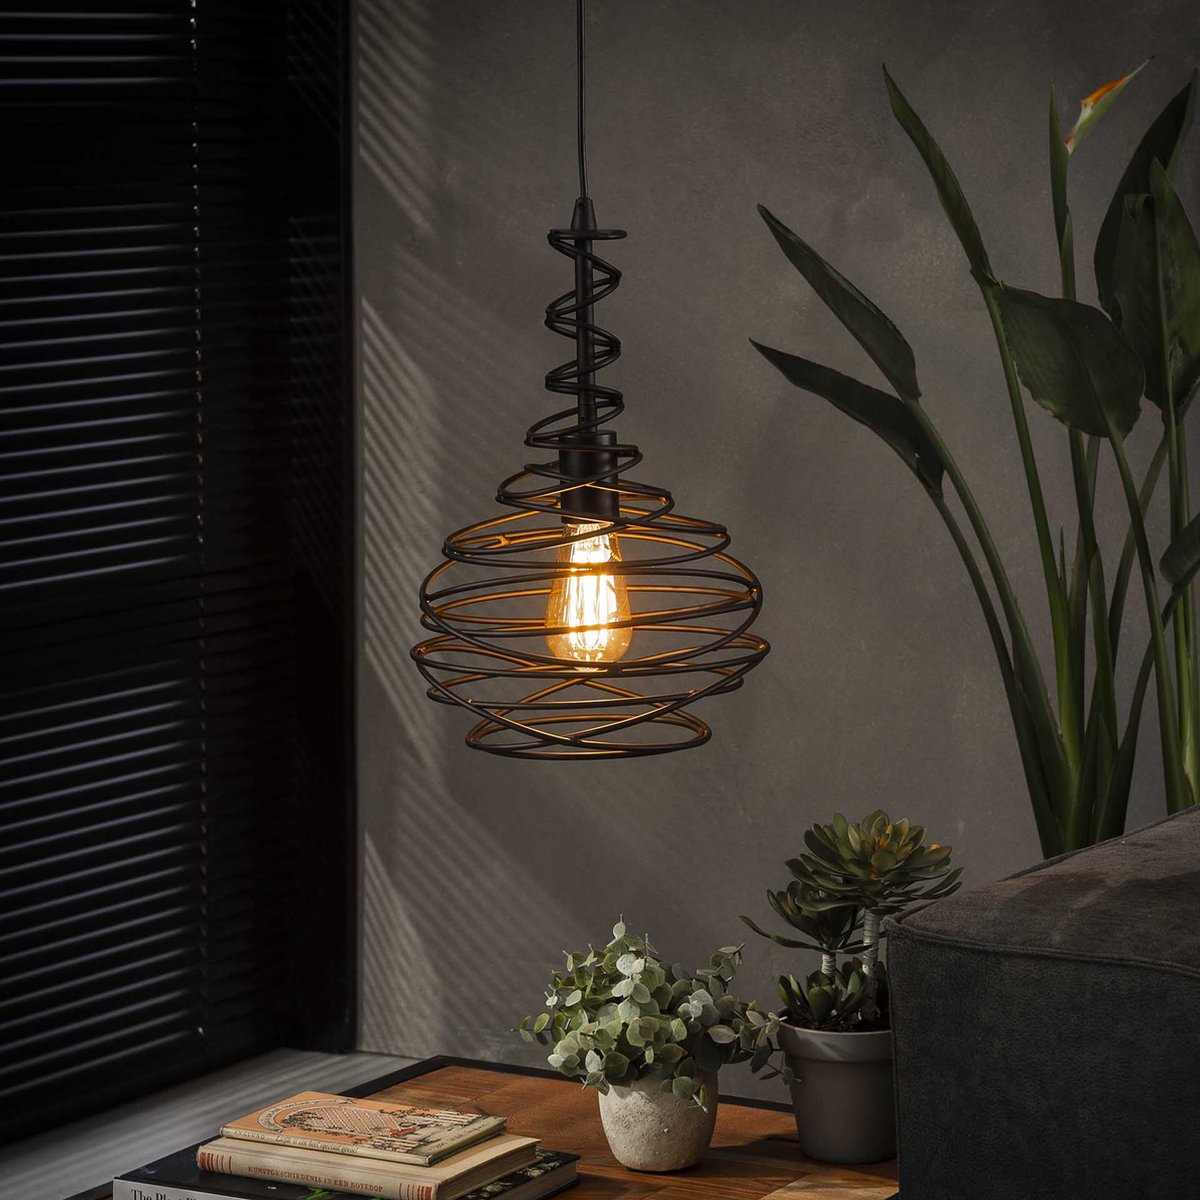 Hanglamp kegel spinn | 1 lichts | zwart | metaal | in hoogte verstelbaar tot 150 cm | Ø 25 cm | eetkamer / eettafel lamp | modern / sfeervol design